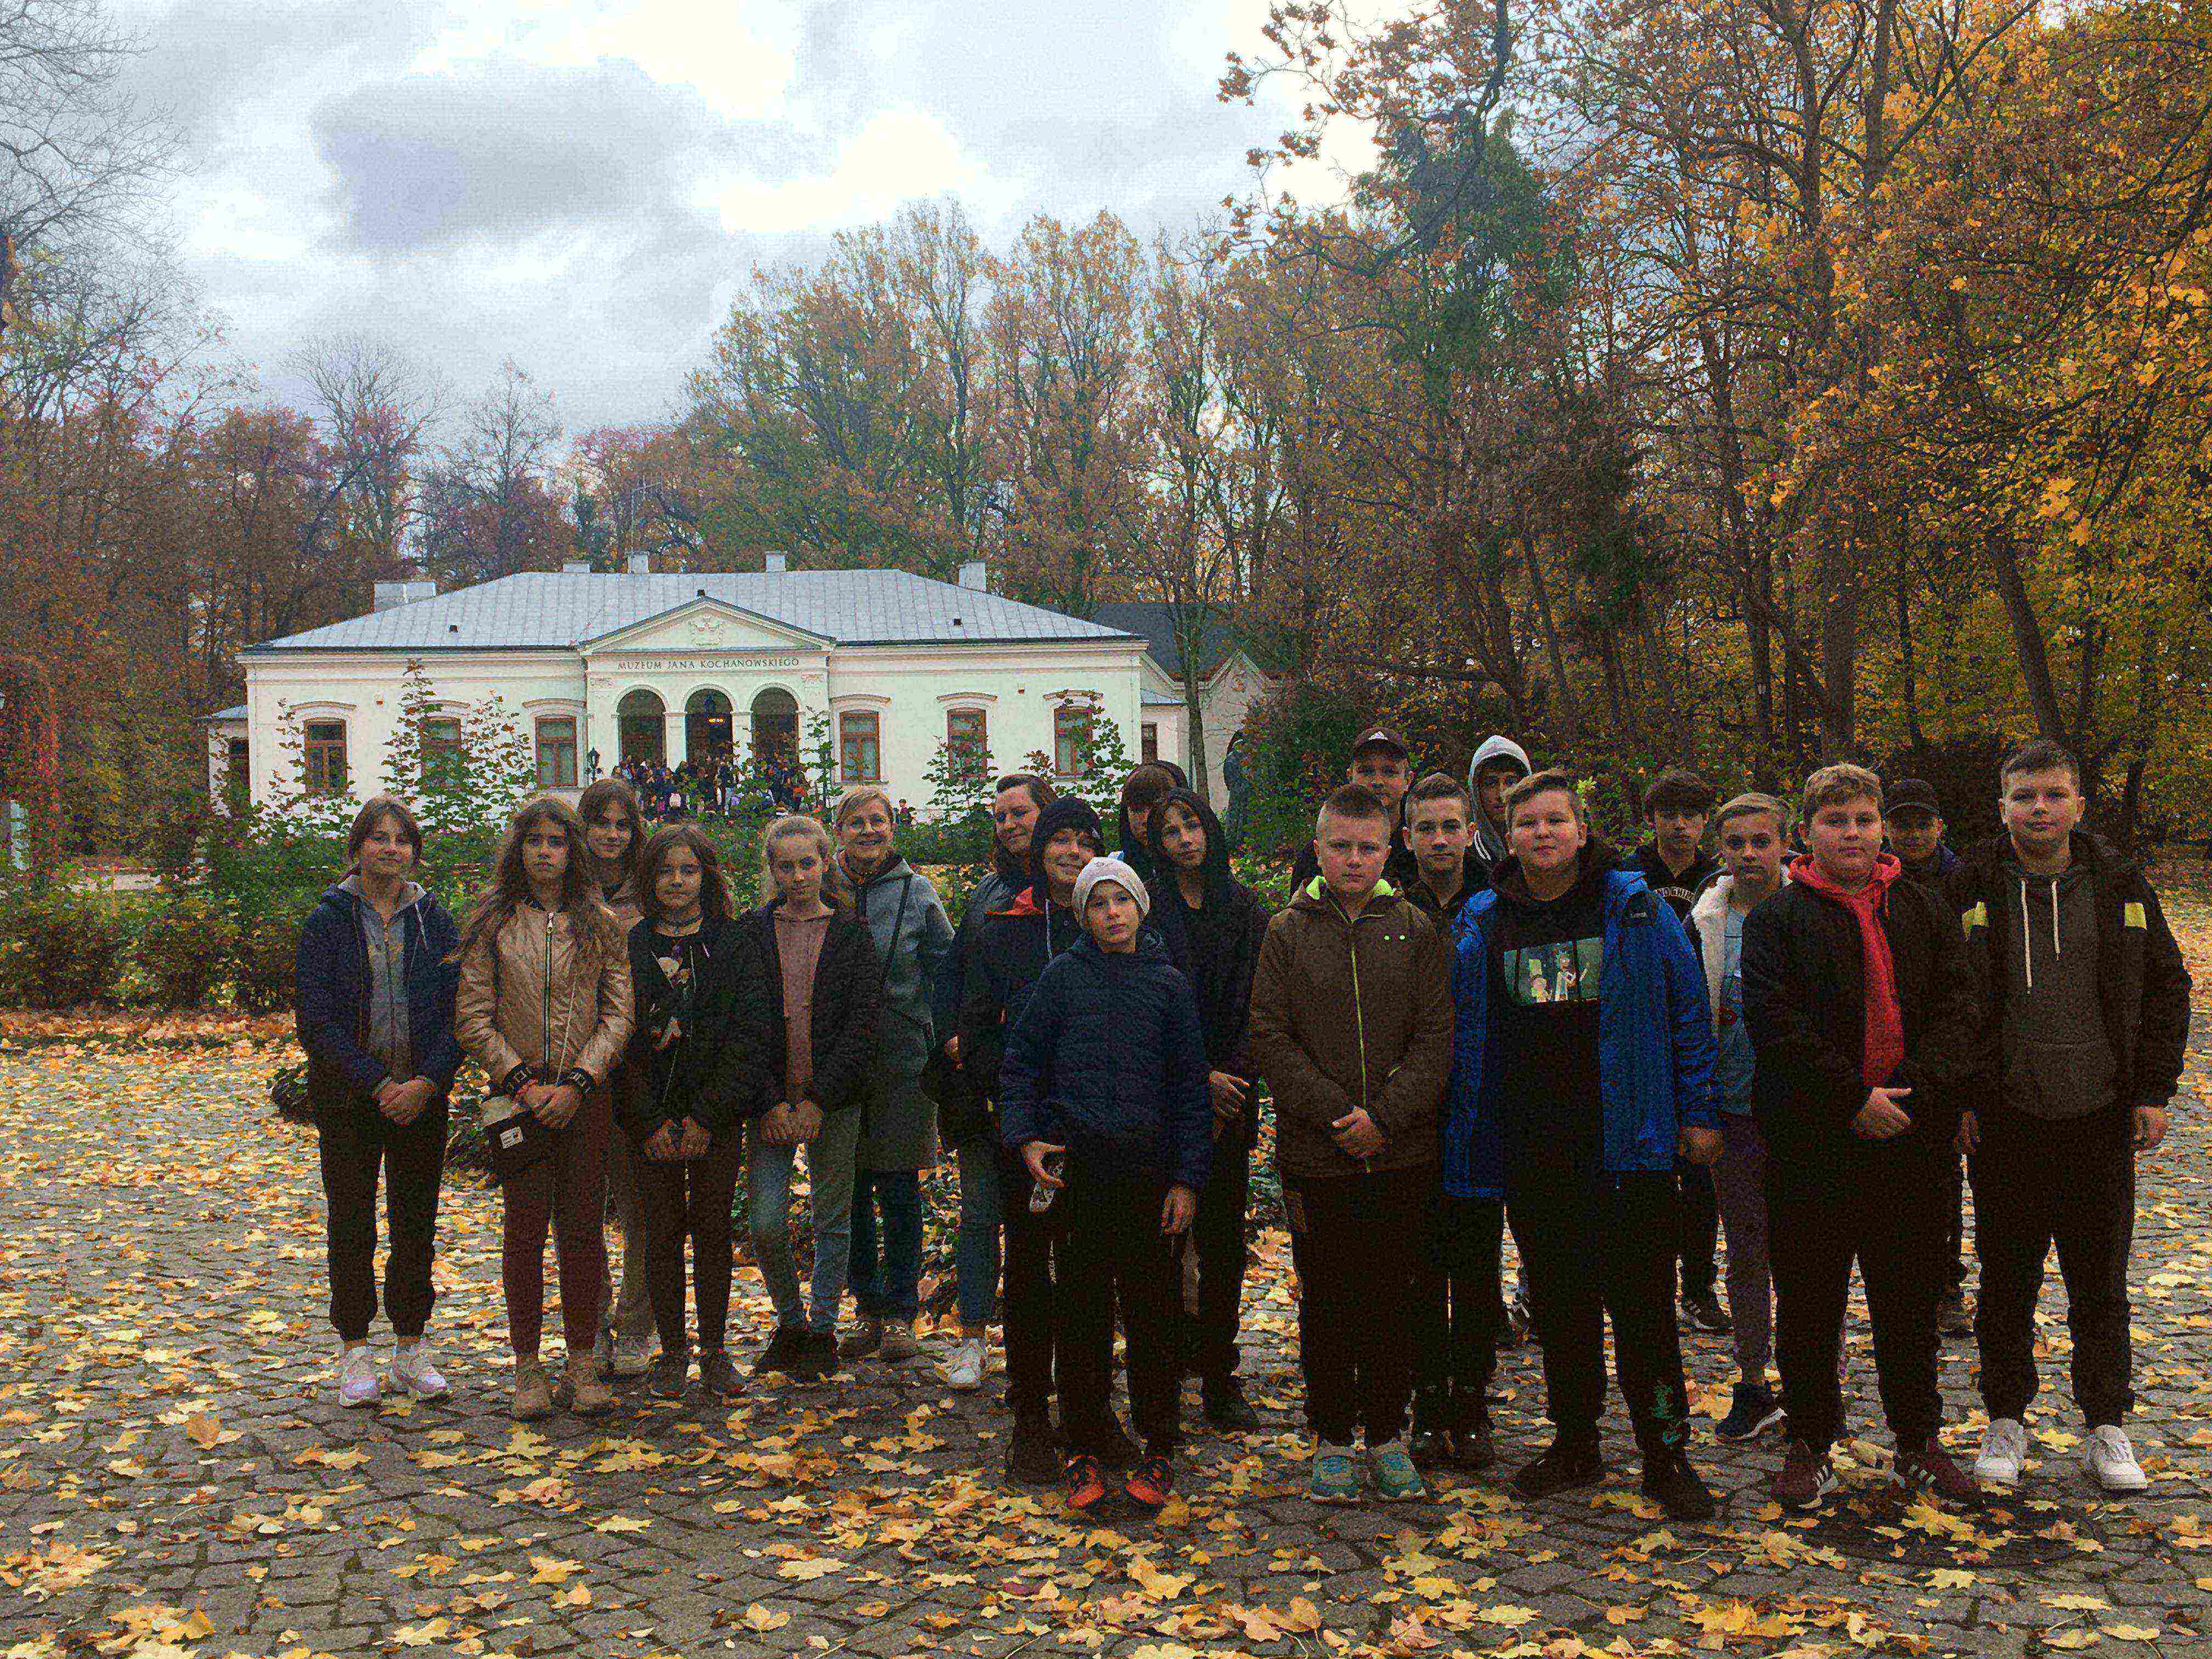 Grupa młodzieży na tle dworku otoczonego parkiem w barwach jesieni.